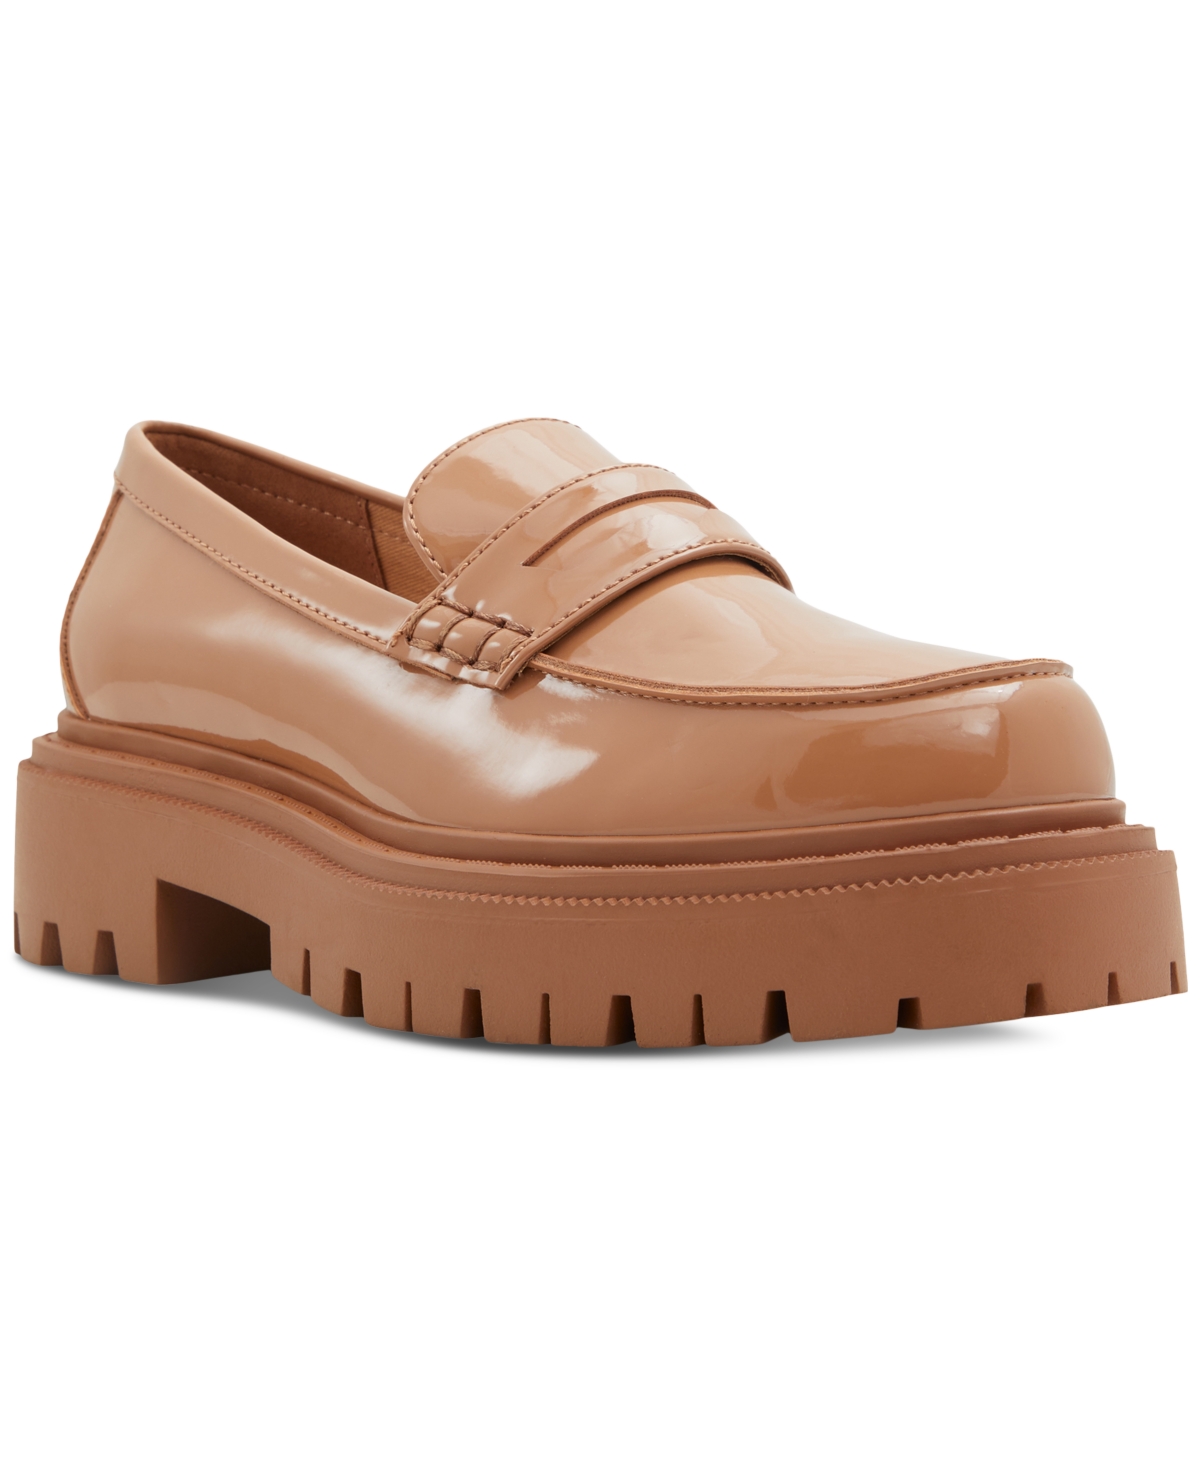 Aldo Bigstrut Lug-Sole Loafers Women's Shoes